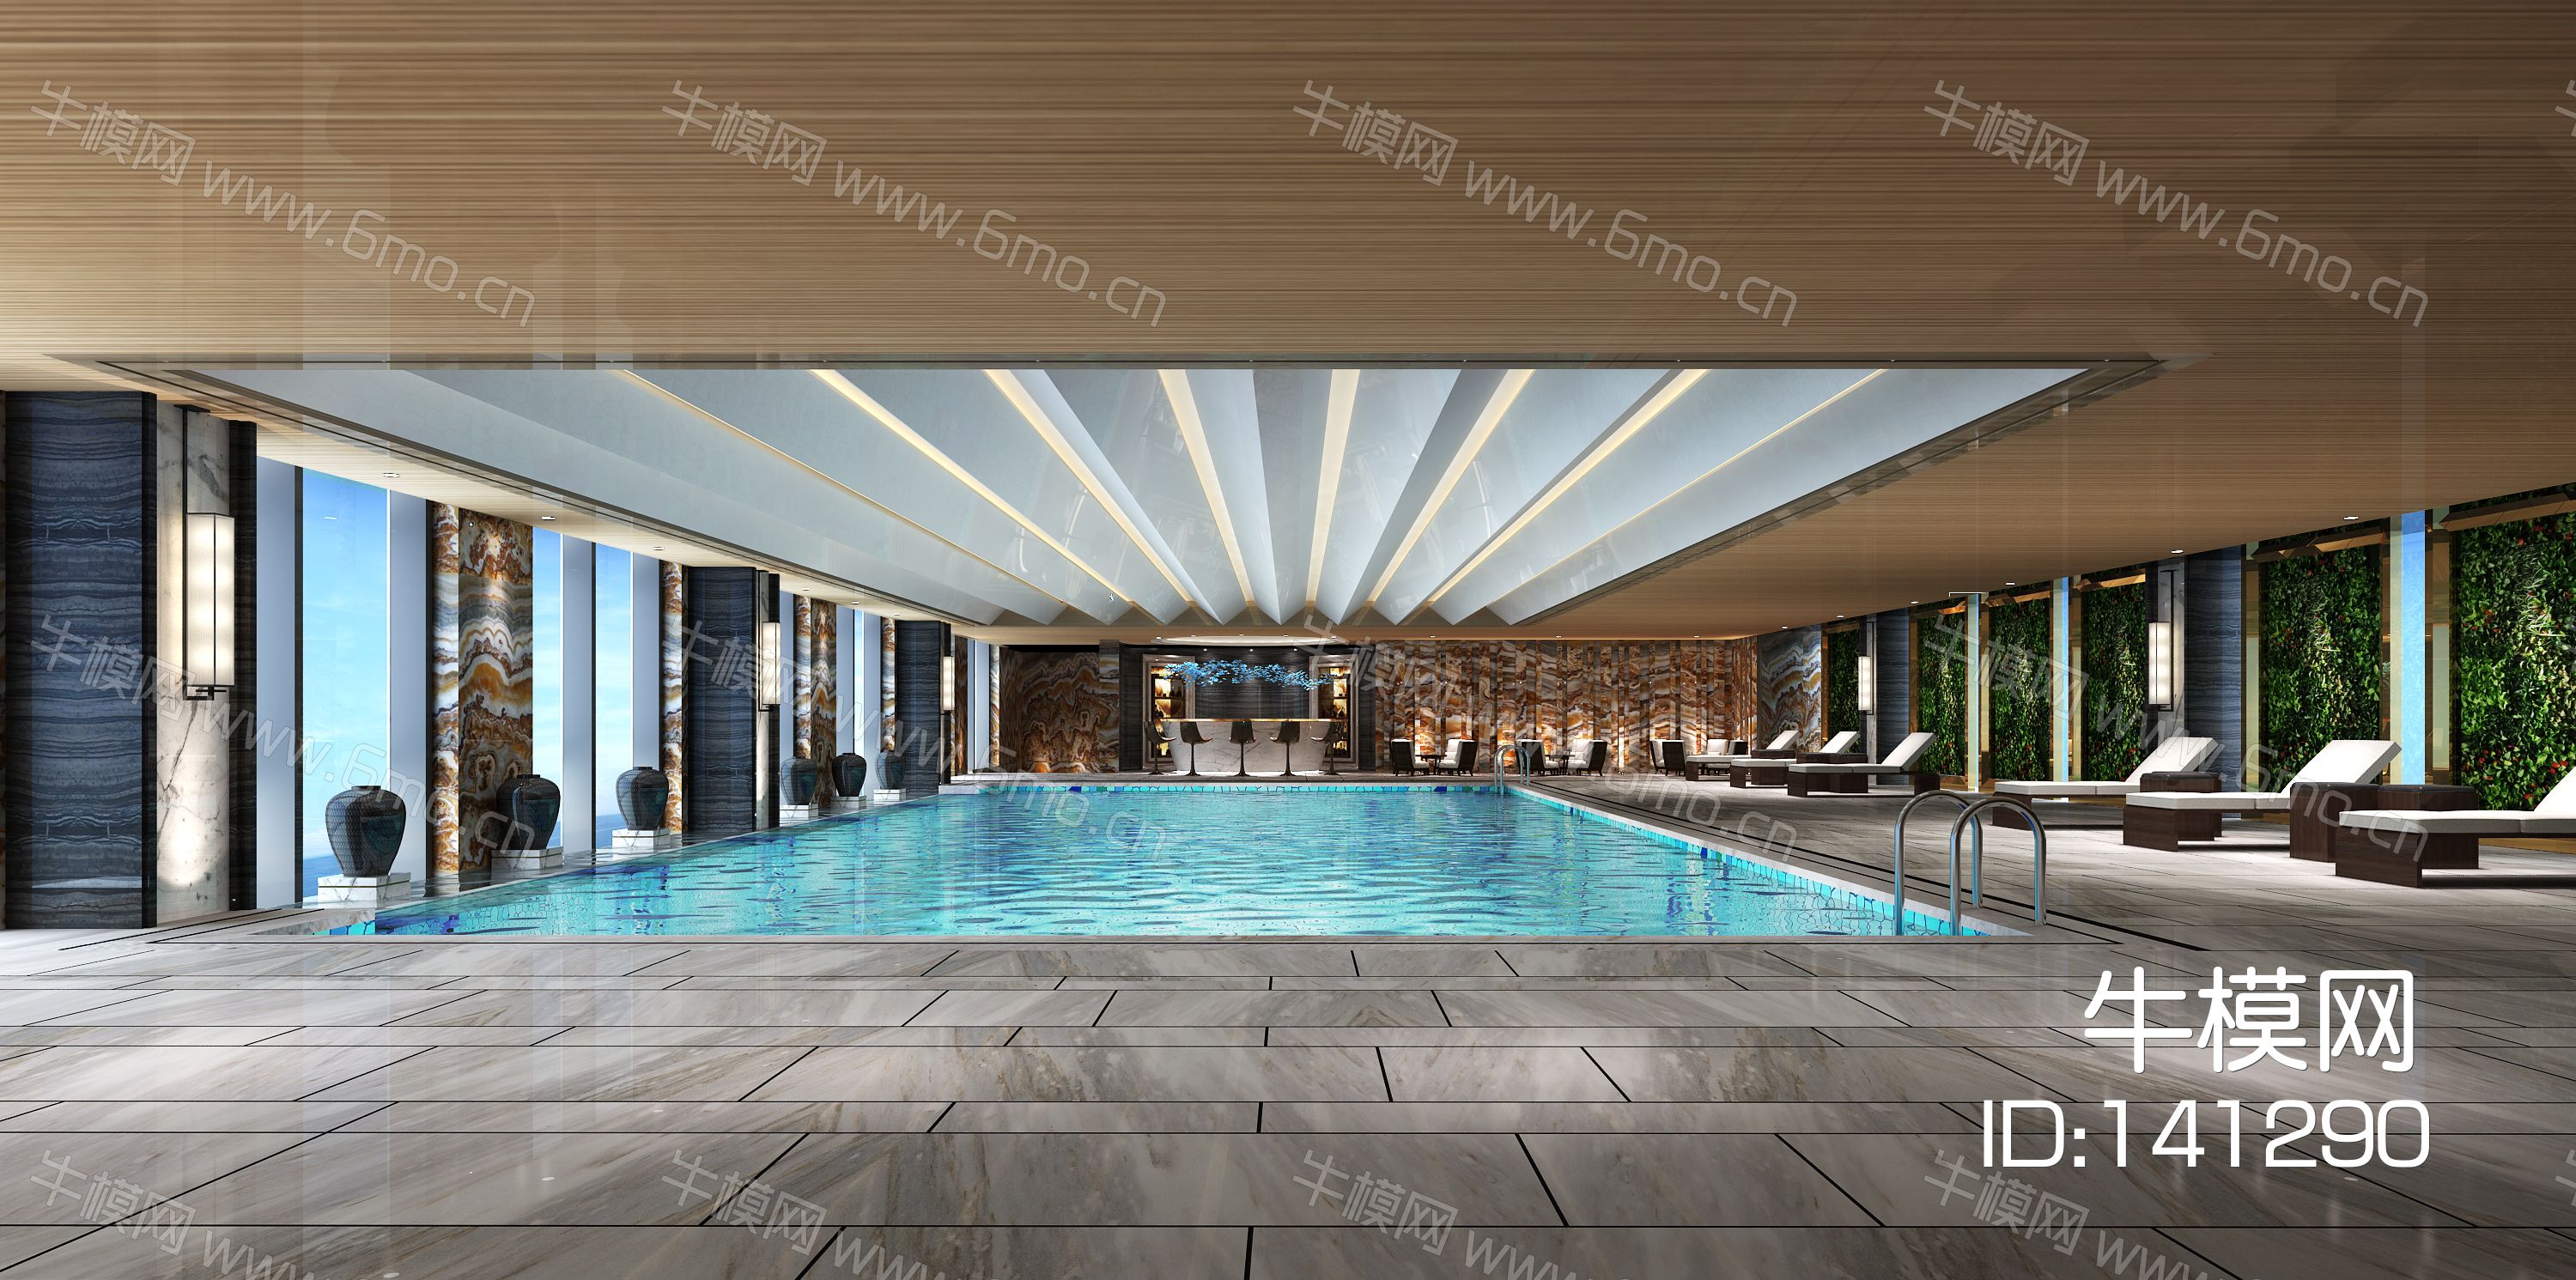 现代奢华酒店游泳池